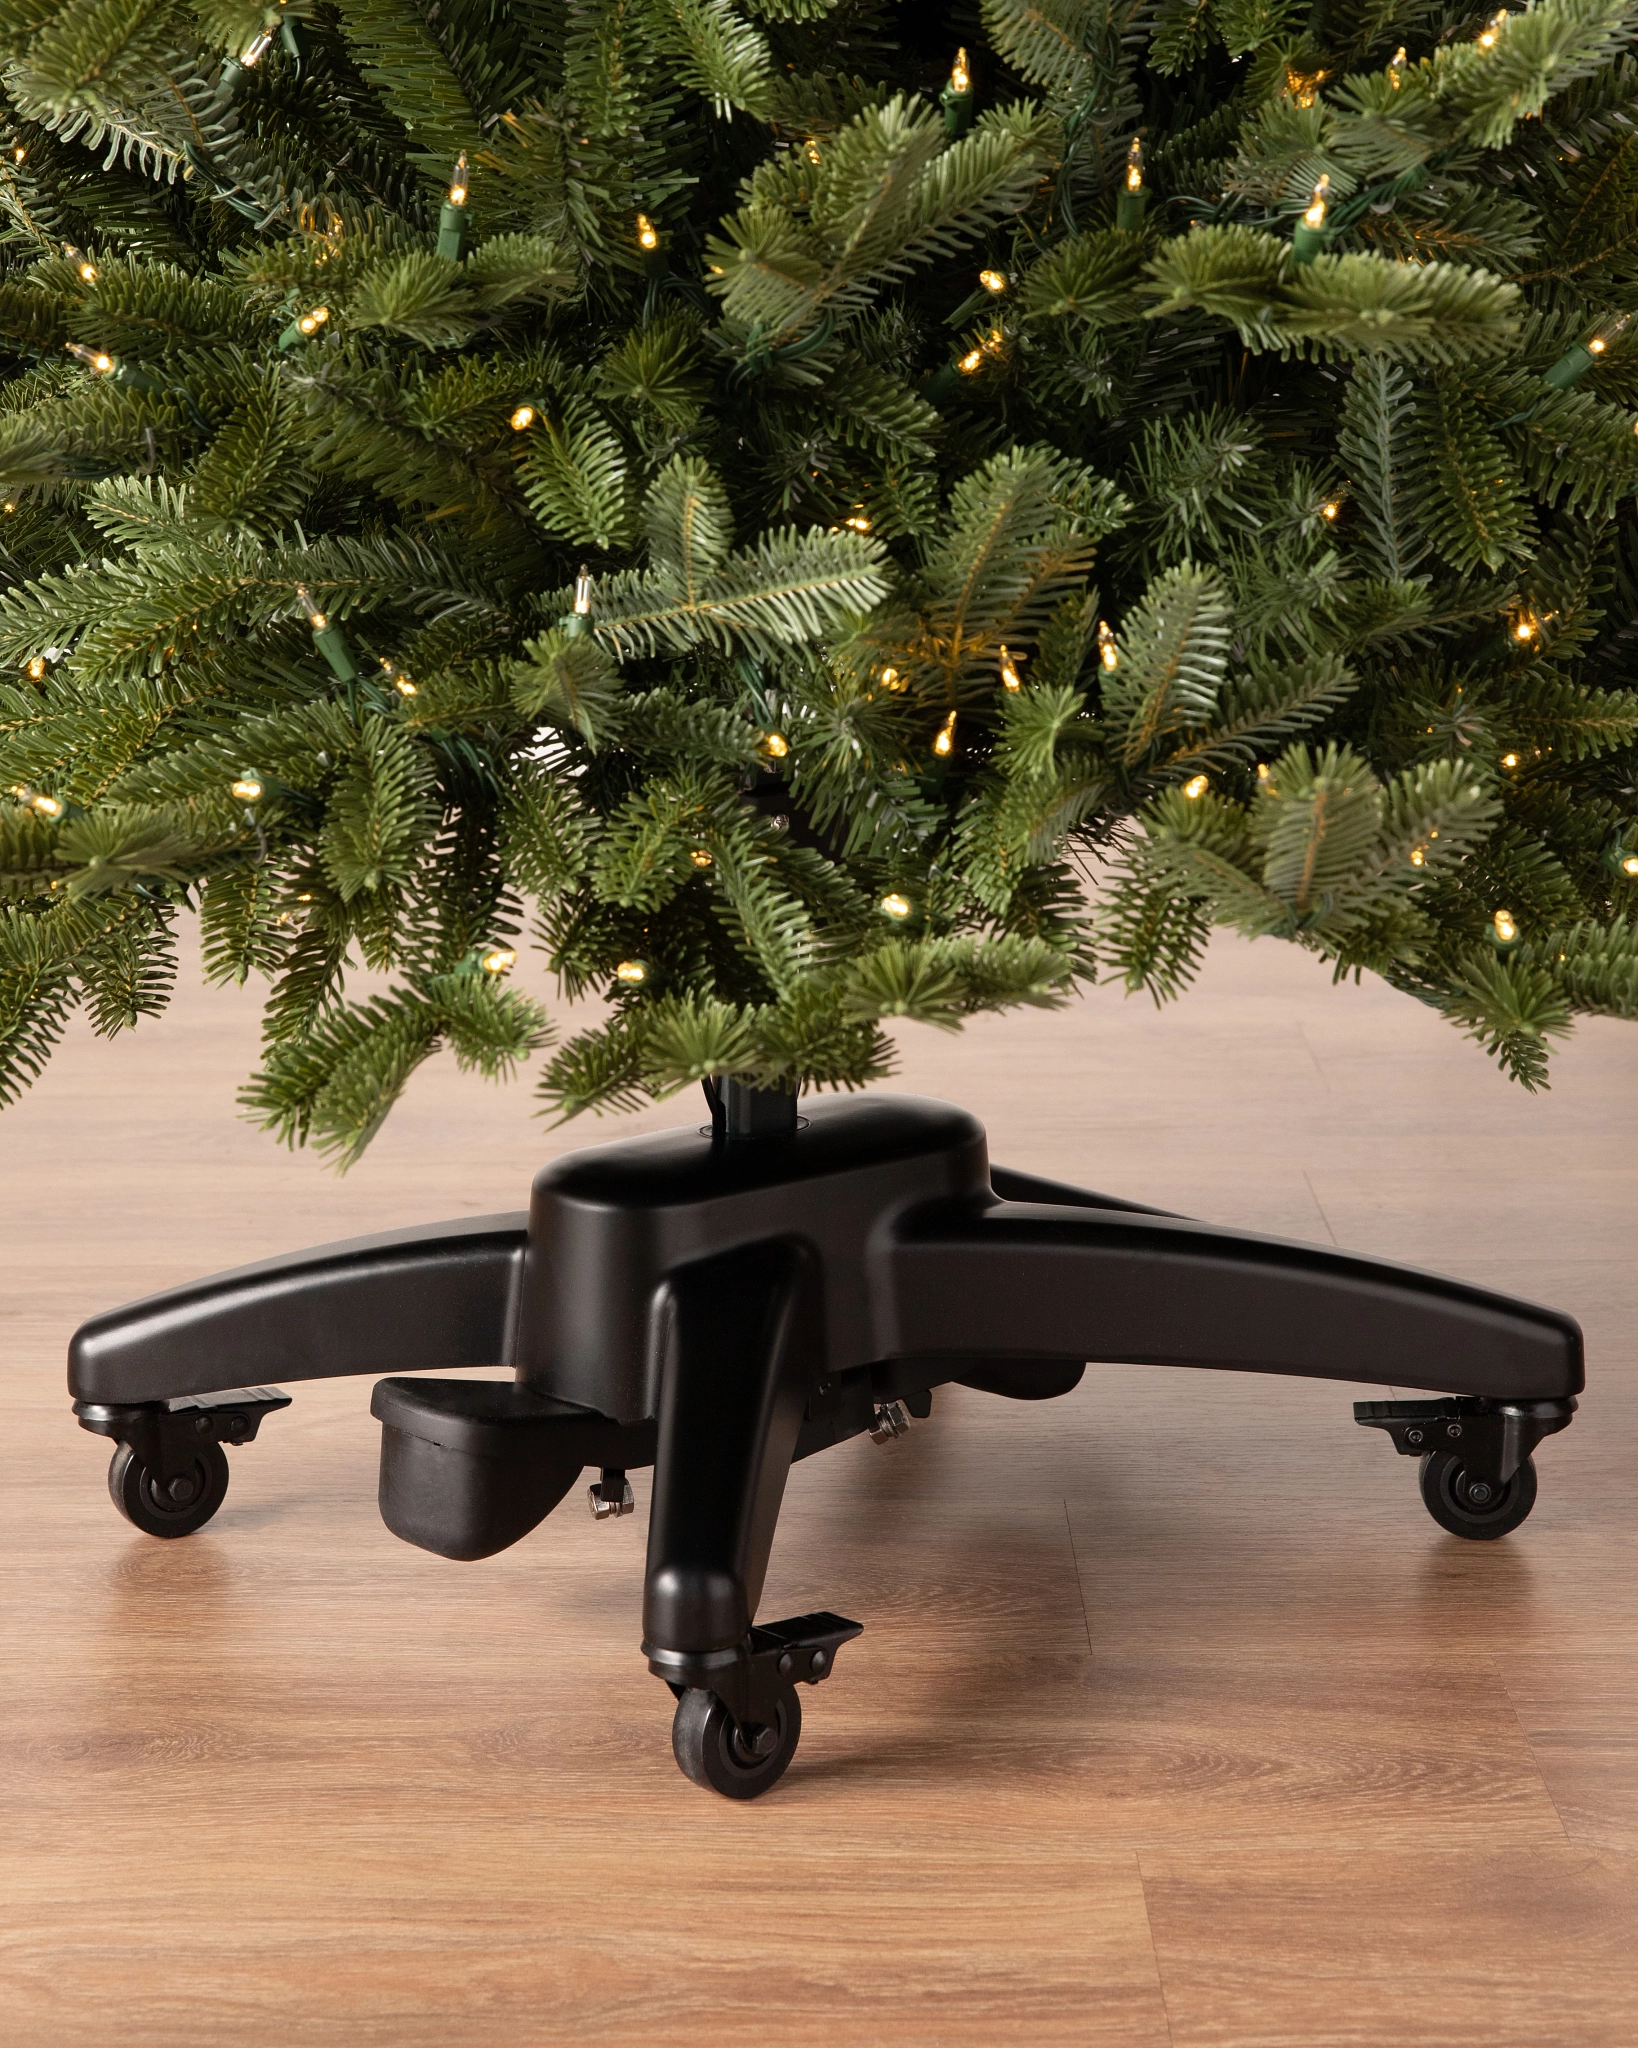 BH Fraser Fir® Flip Artificial Christmas Trees®